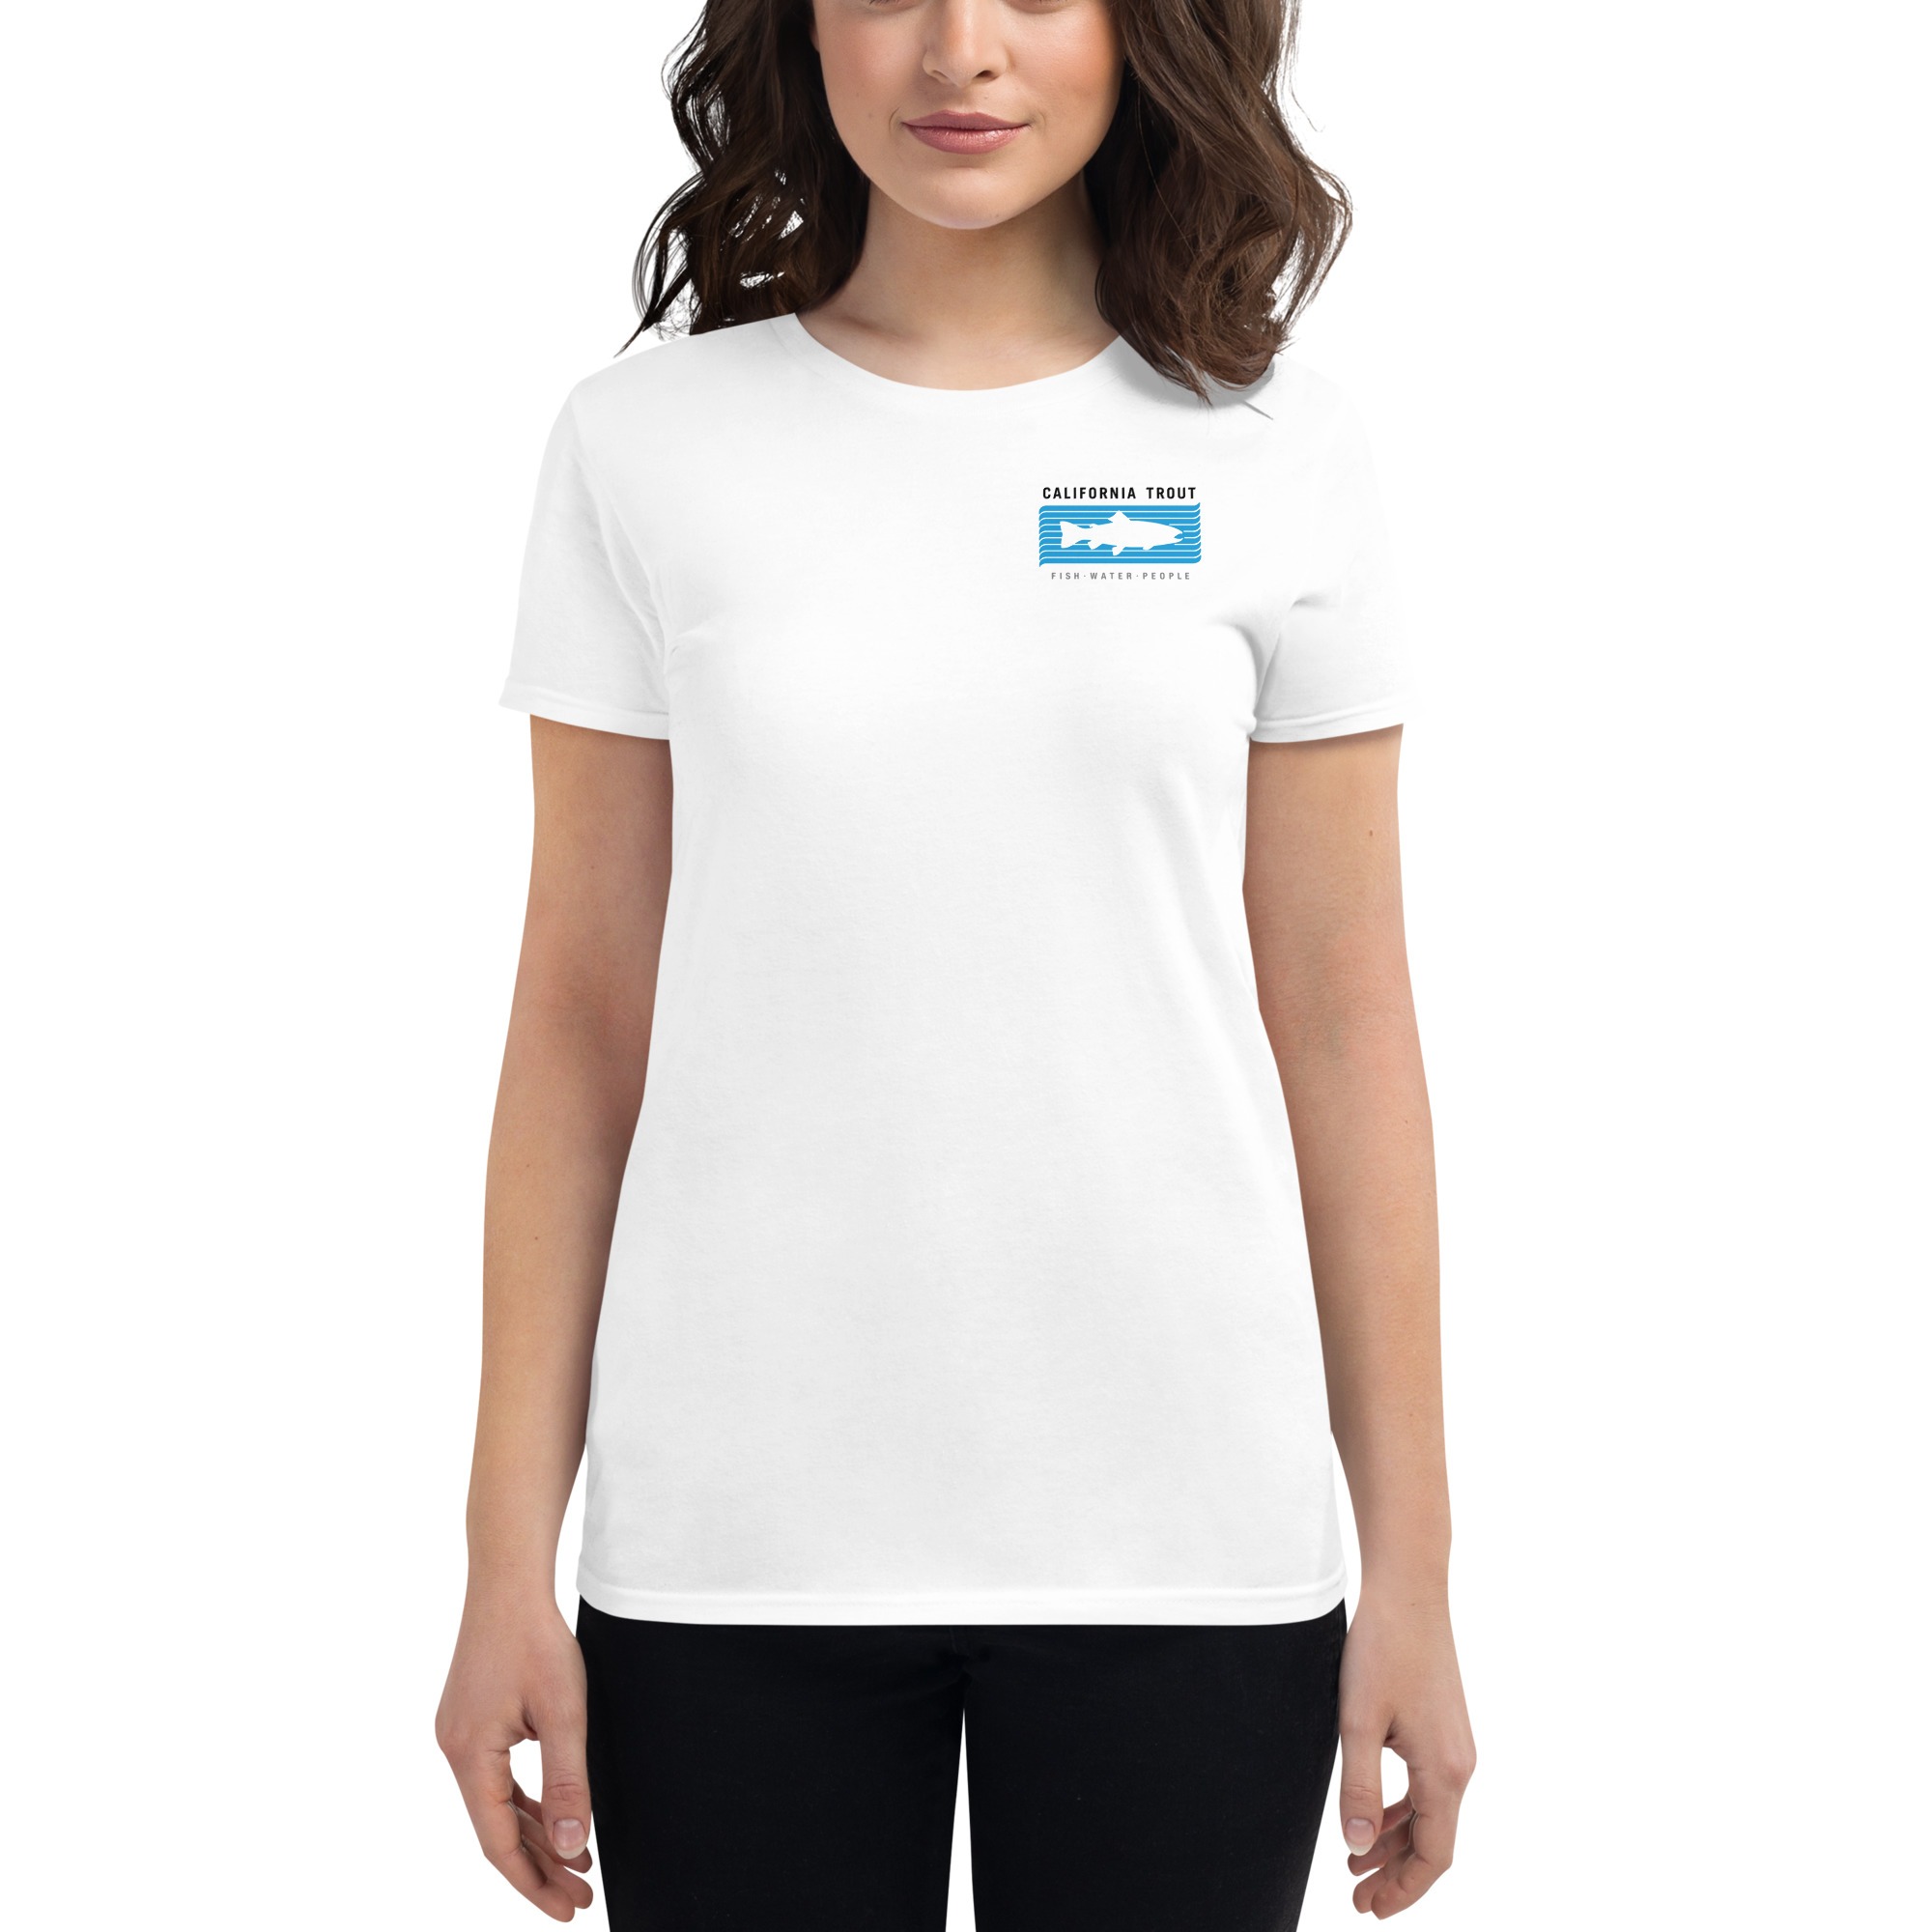 Fishing logo Women's T-Shirt